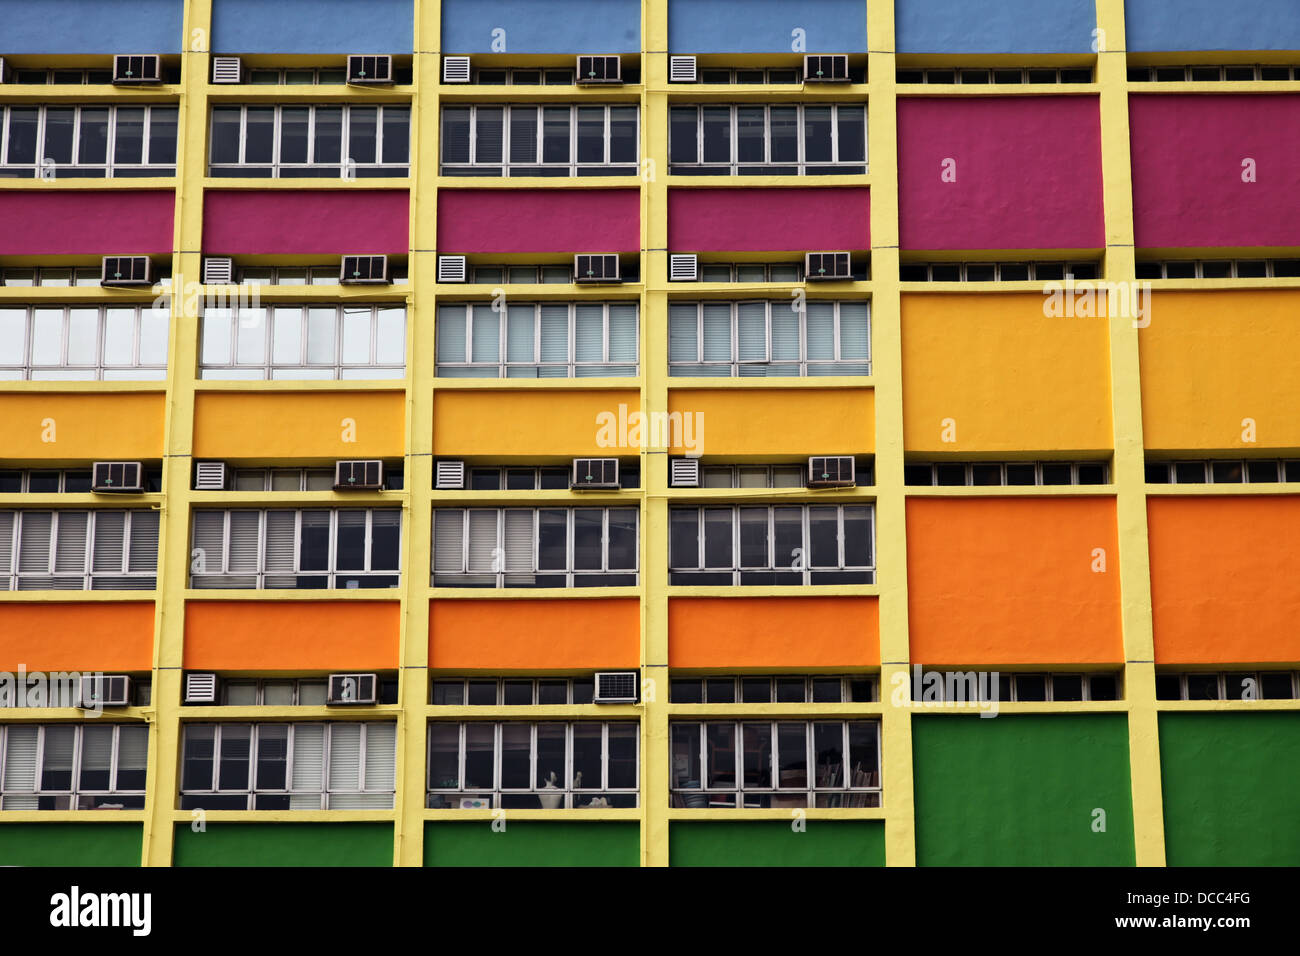 C'est une photo d'une école maternelle très coloré pour les enfants de la primaire à Hong Kong. C'est un bâtiment moderne Banque D'Images